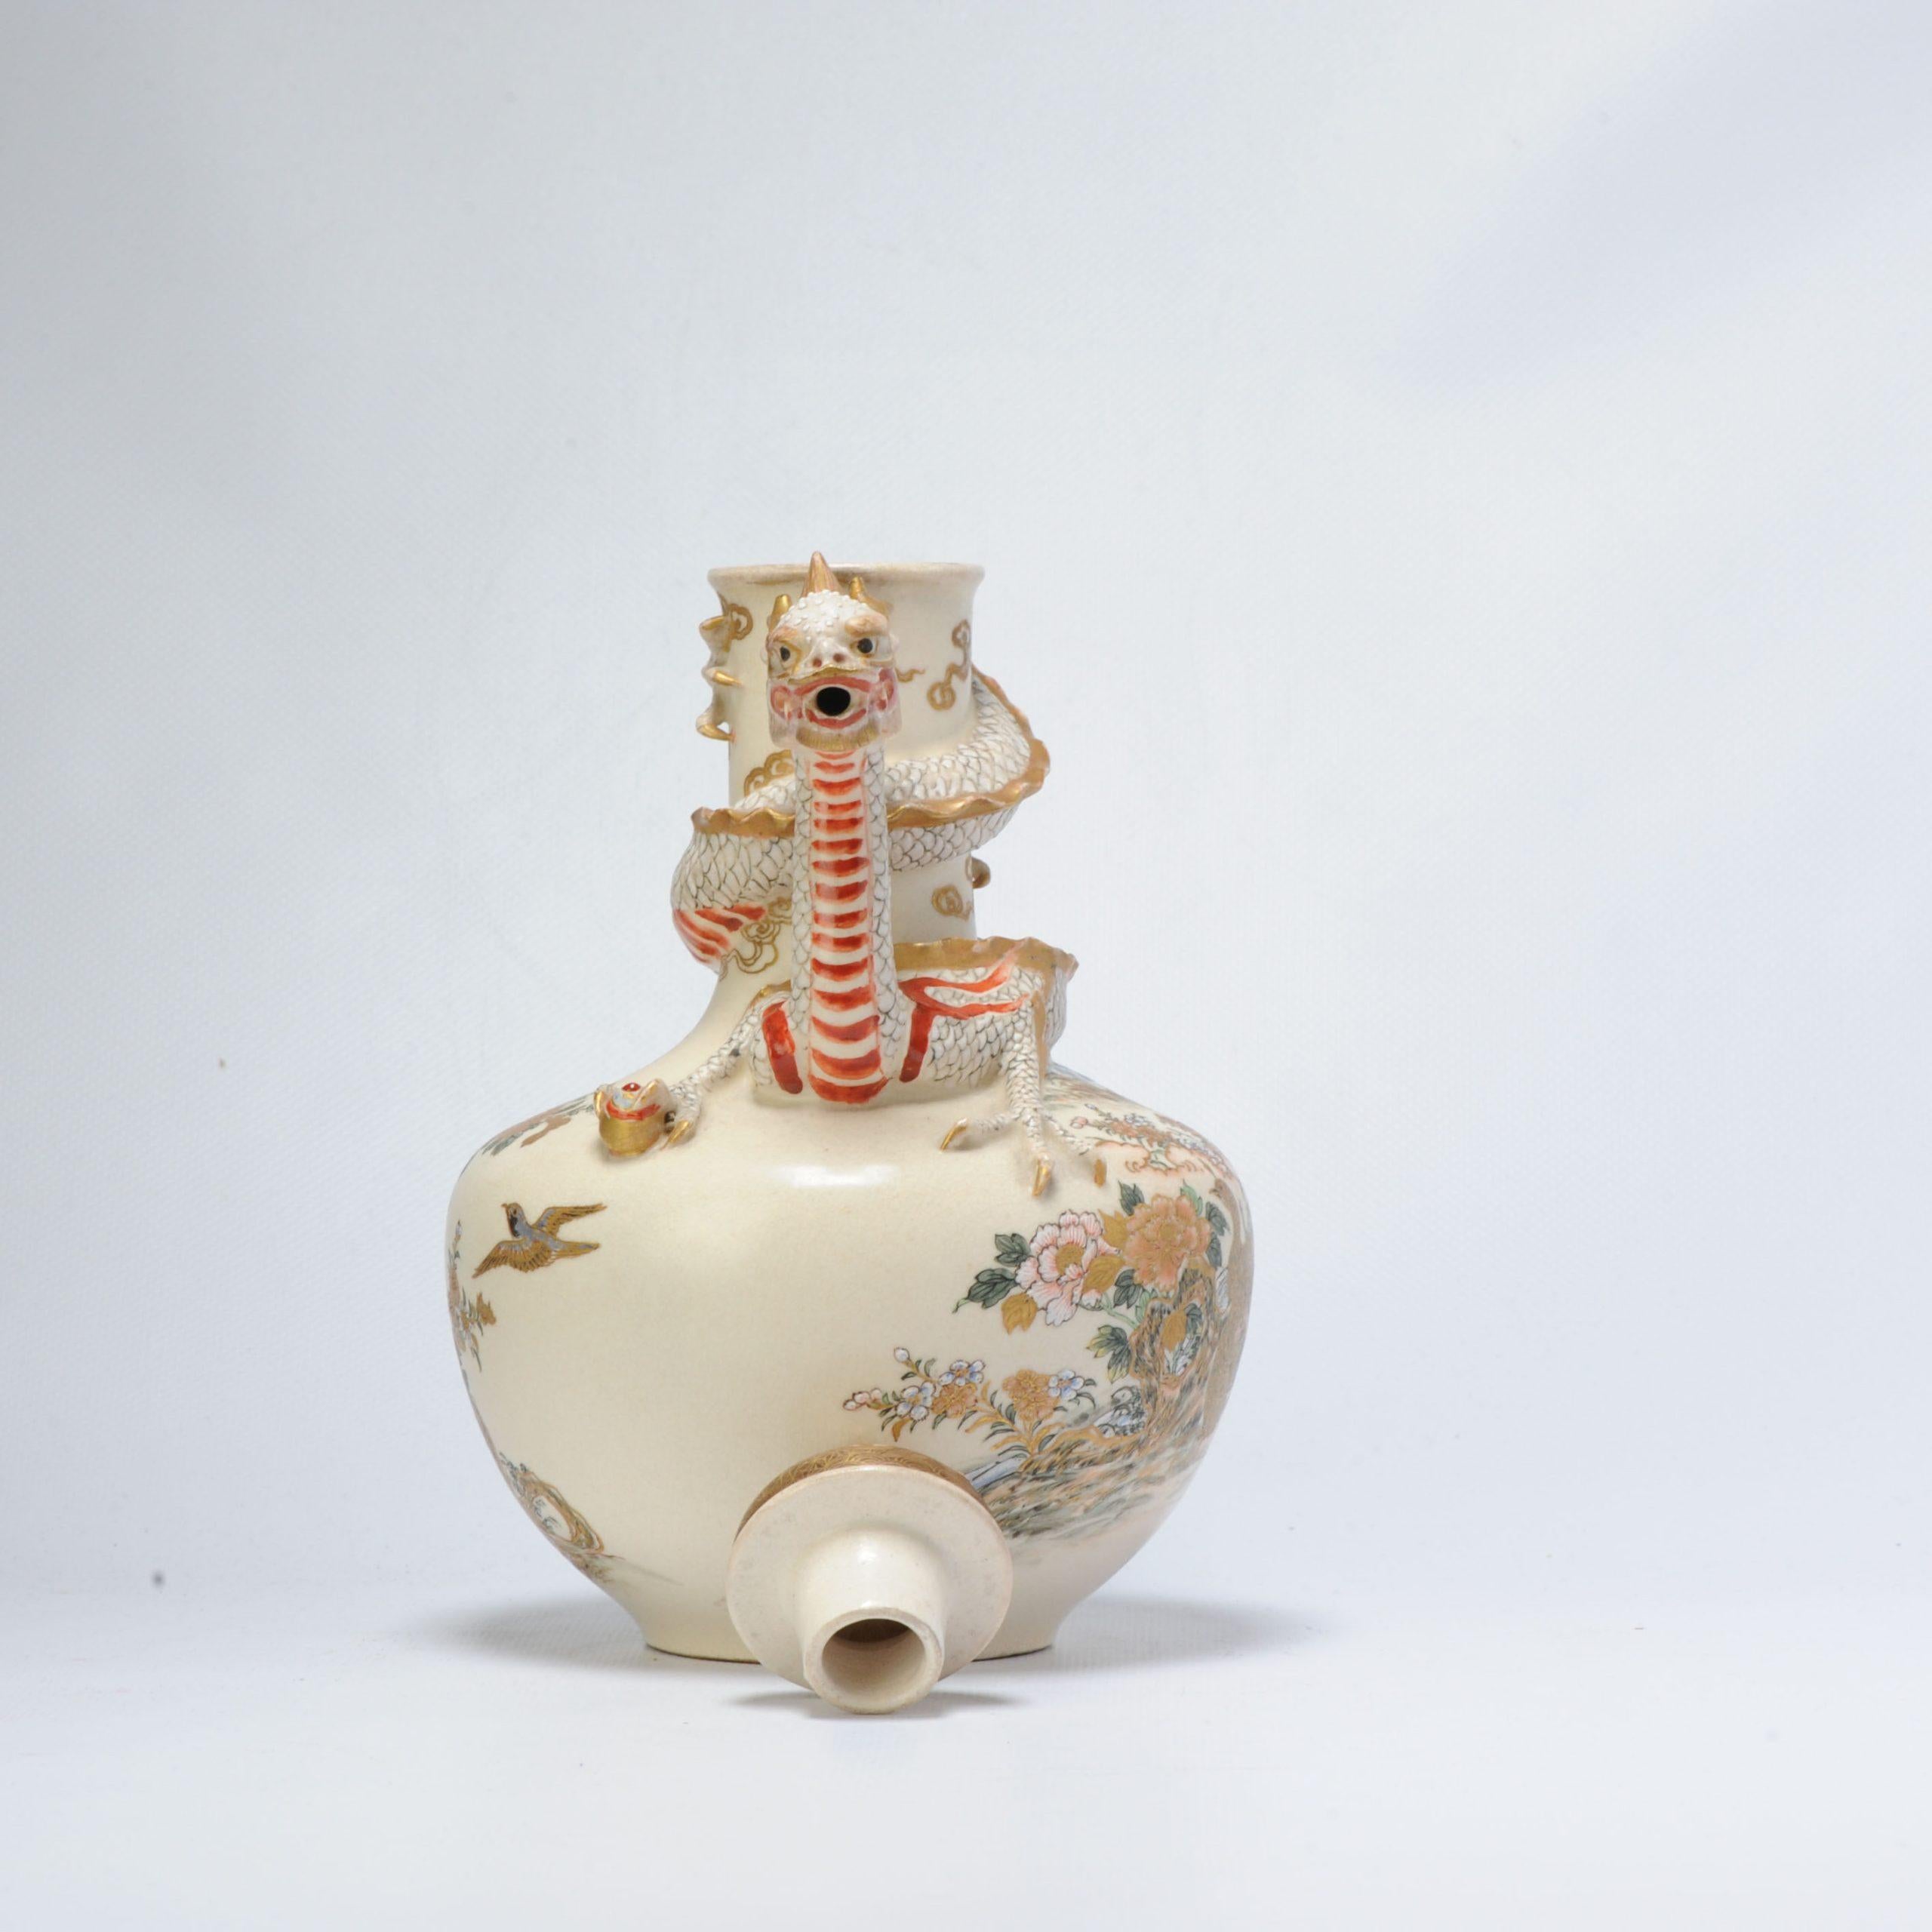 Intéressante et finement peinte Satsuma Pot / Teapot et vase avec Gosu Blue. Très cool et de haute qualité.

Marqué : Le nom de l'artiste se lit comme suit : (Seki-Sai)

Informations complémentaires :
MATERIAL : Porcelaine et poterie
Région